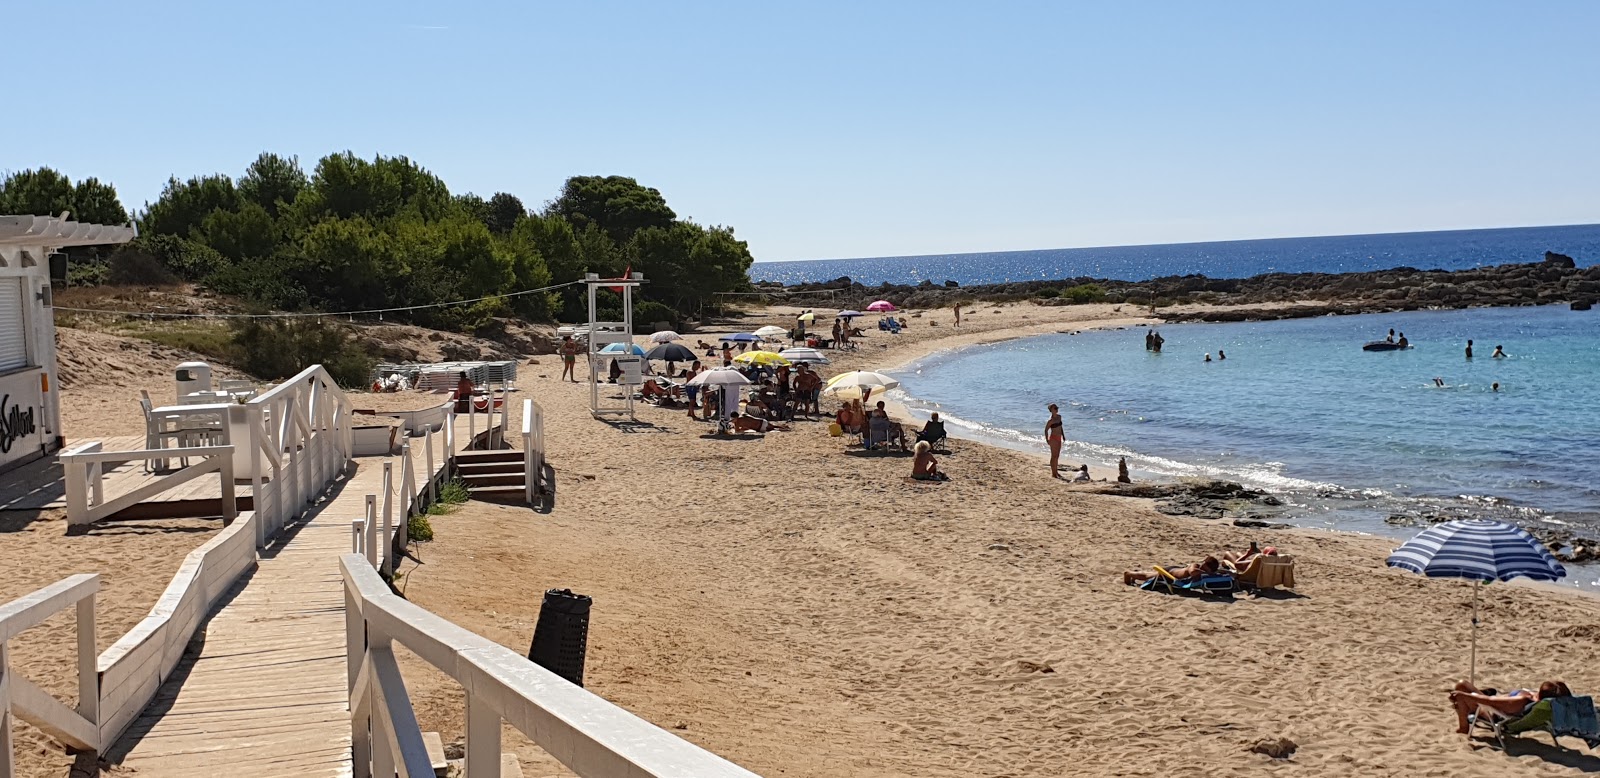 Foto de Spiaggia di Serrone ubicado en área natural